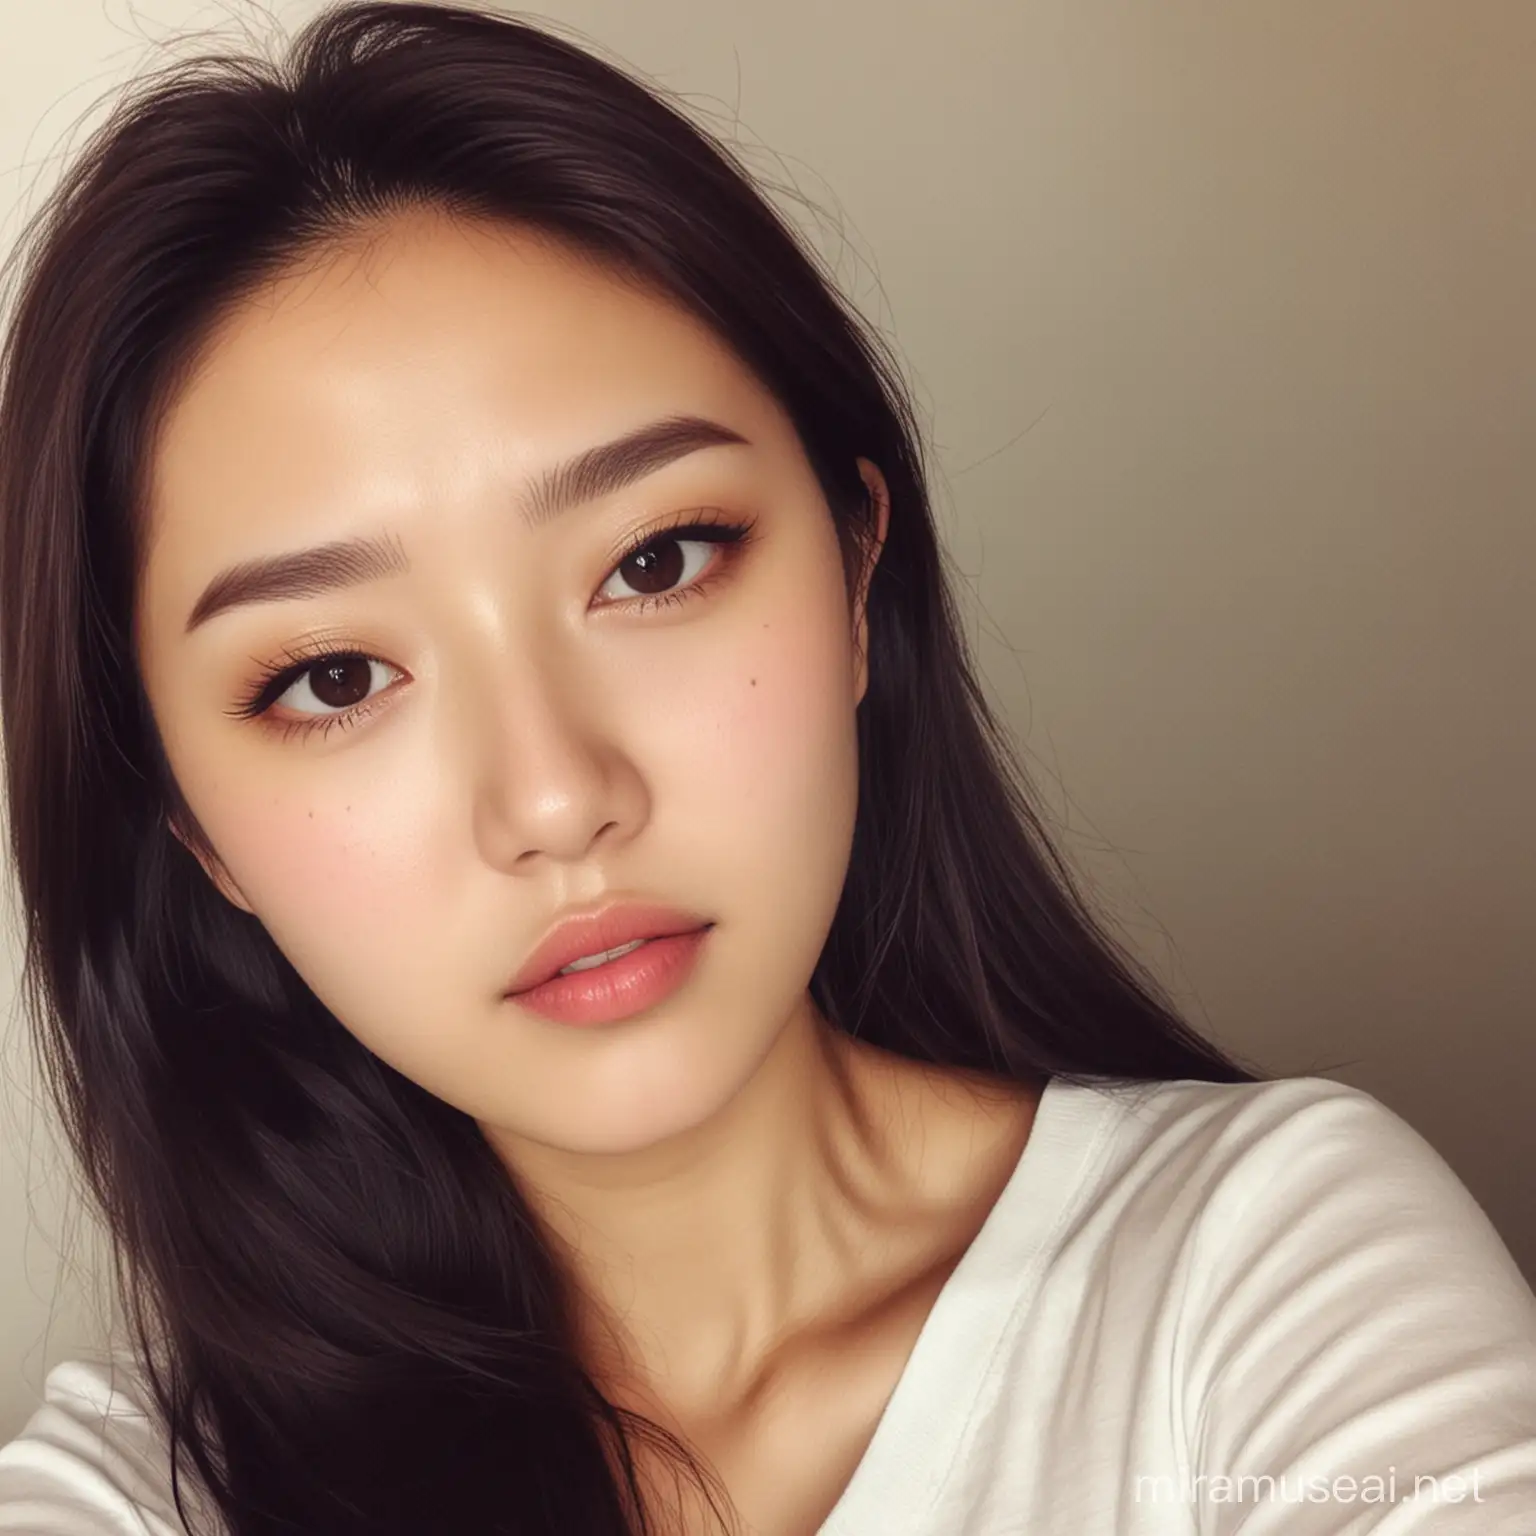 Korean beautiful girl selfie 